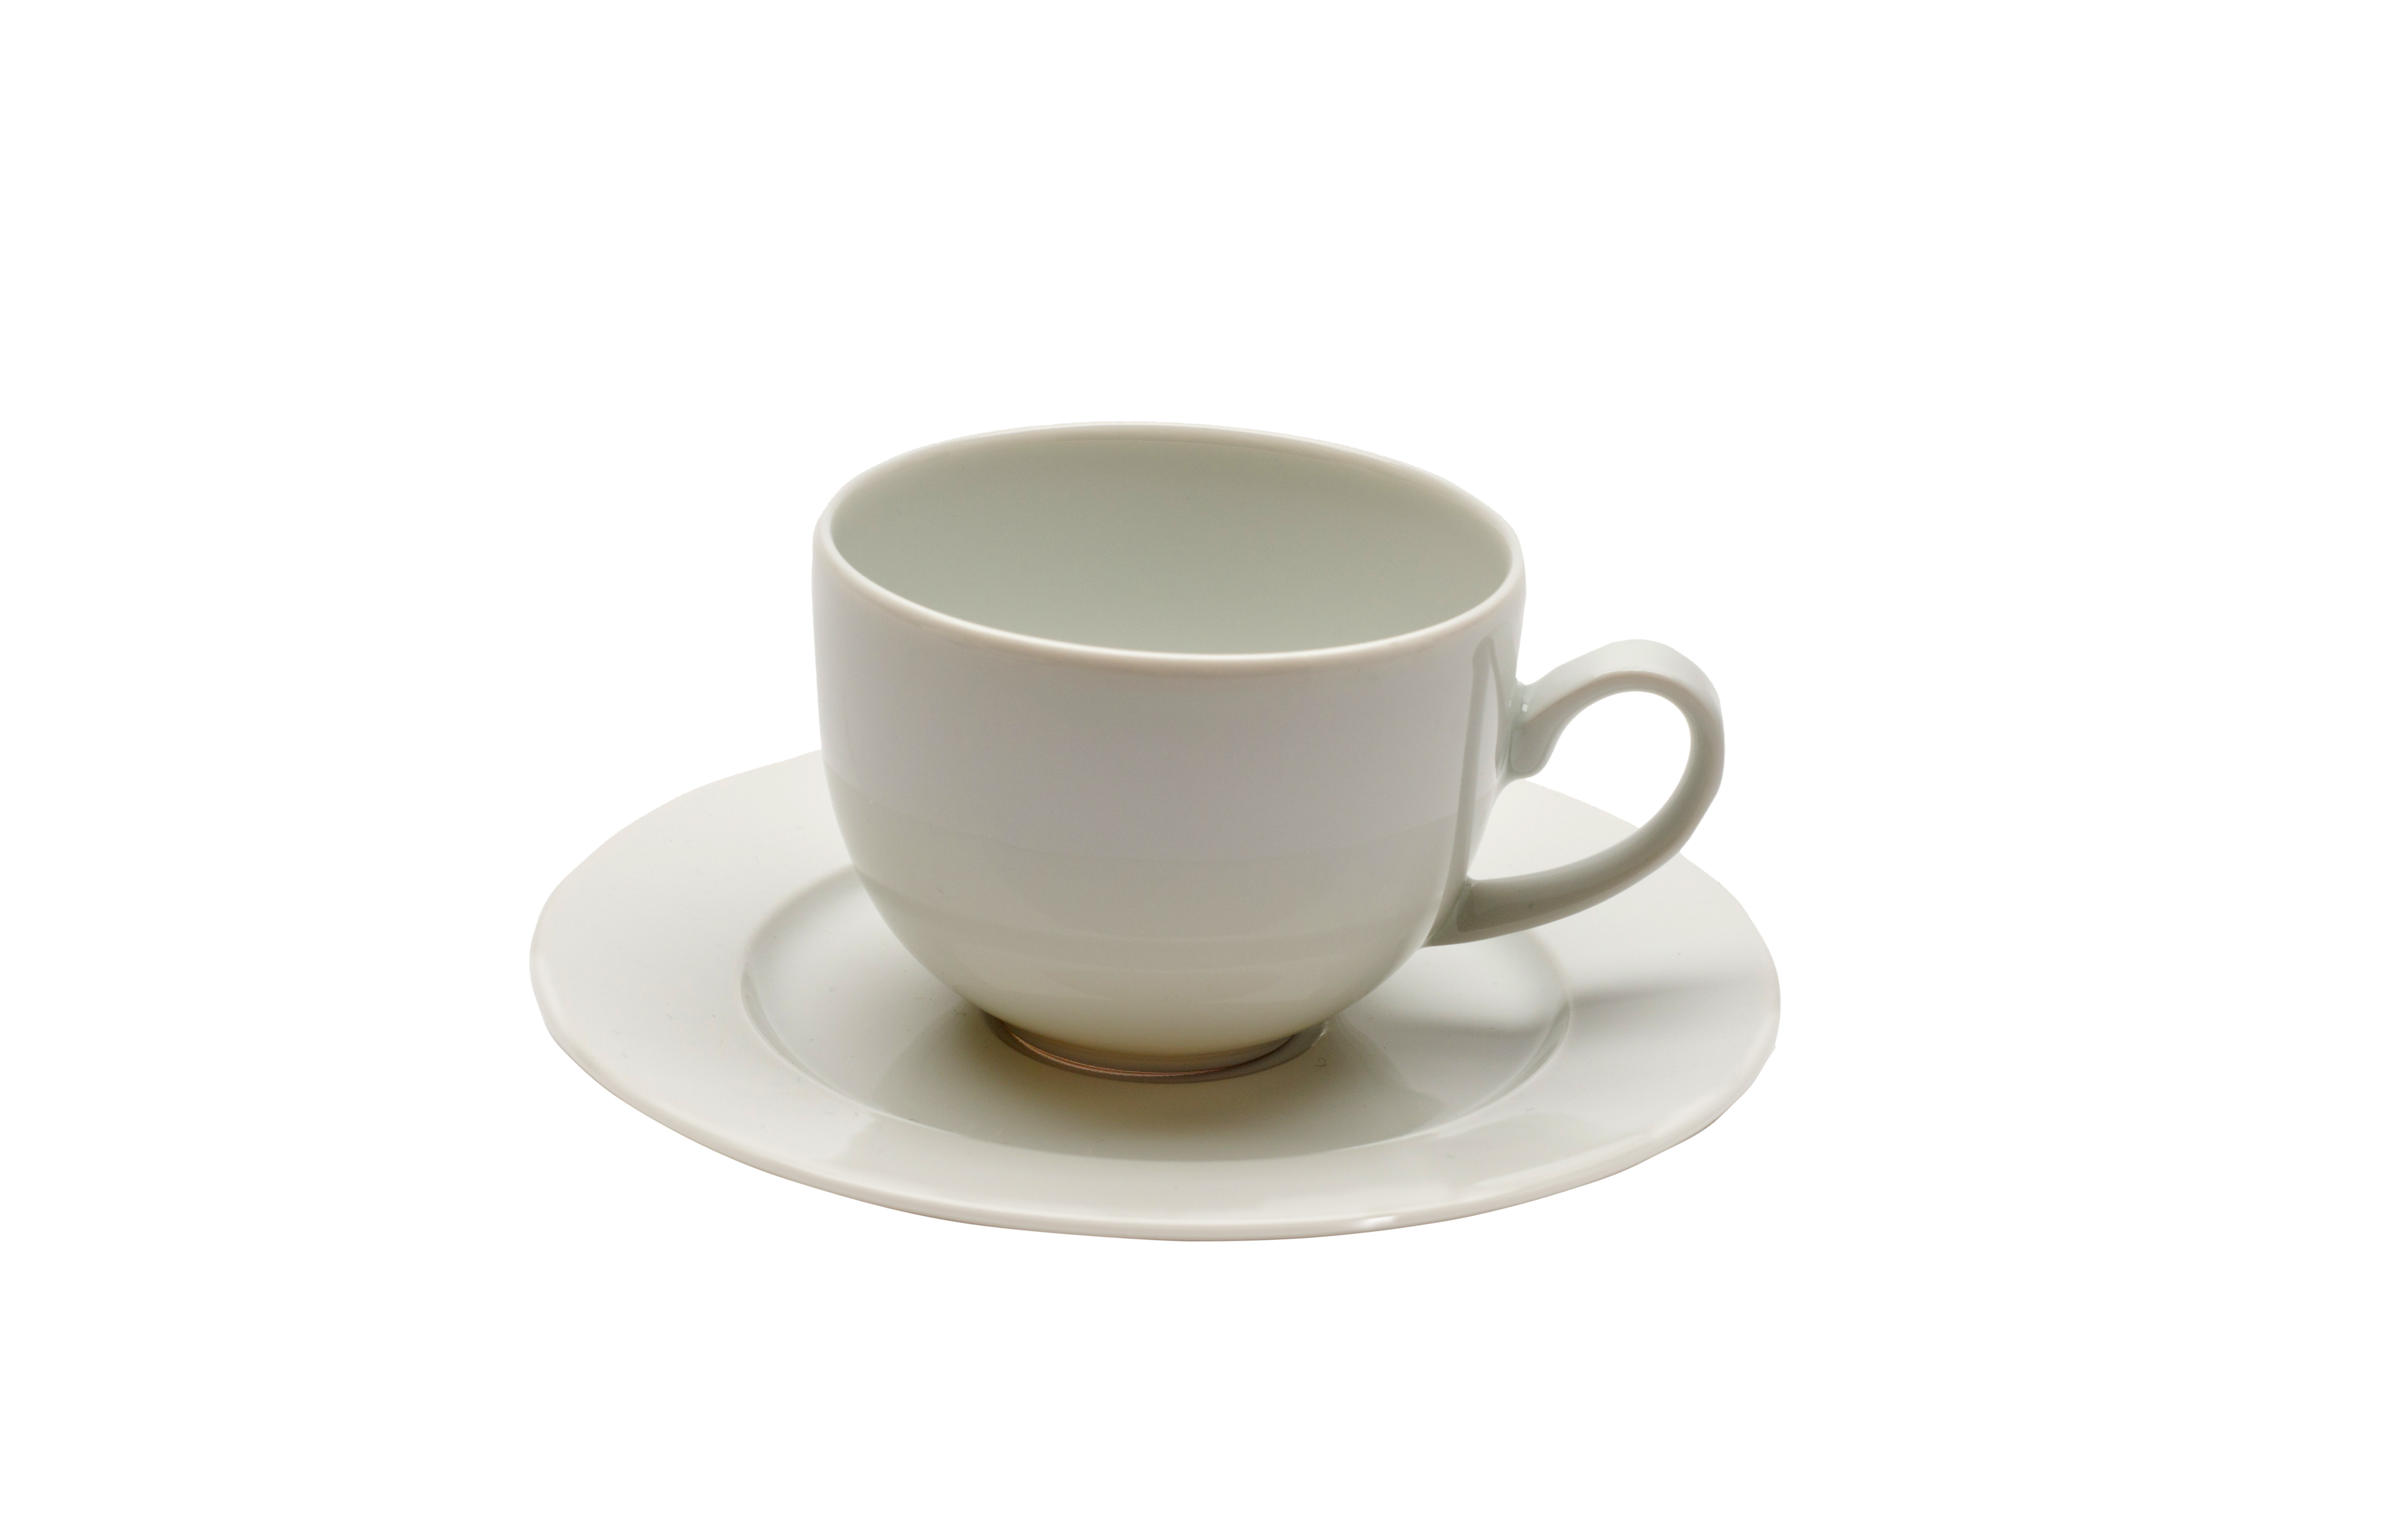 category_A4011 - Tea/Coffee Saucer